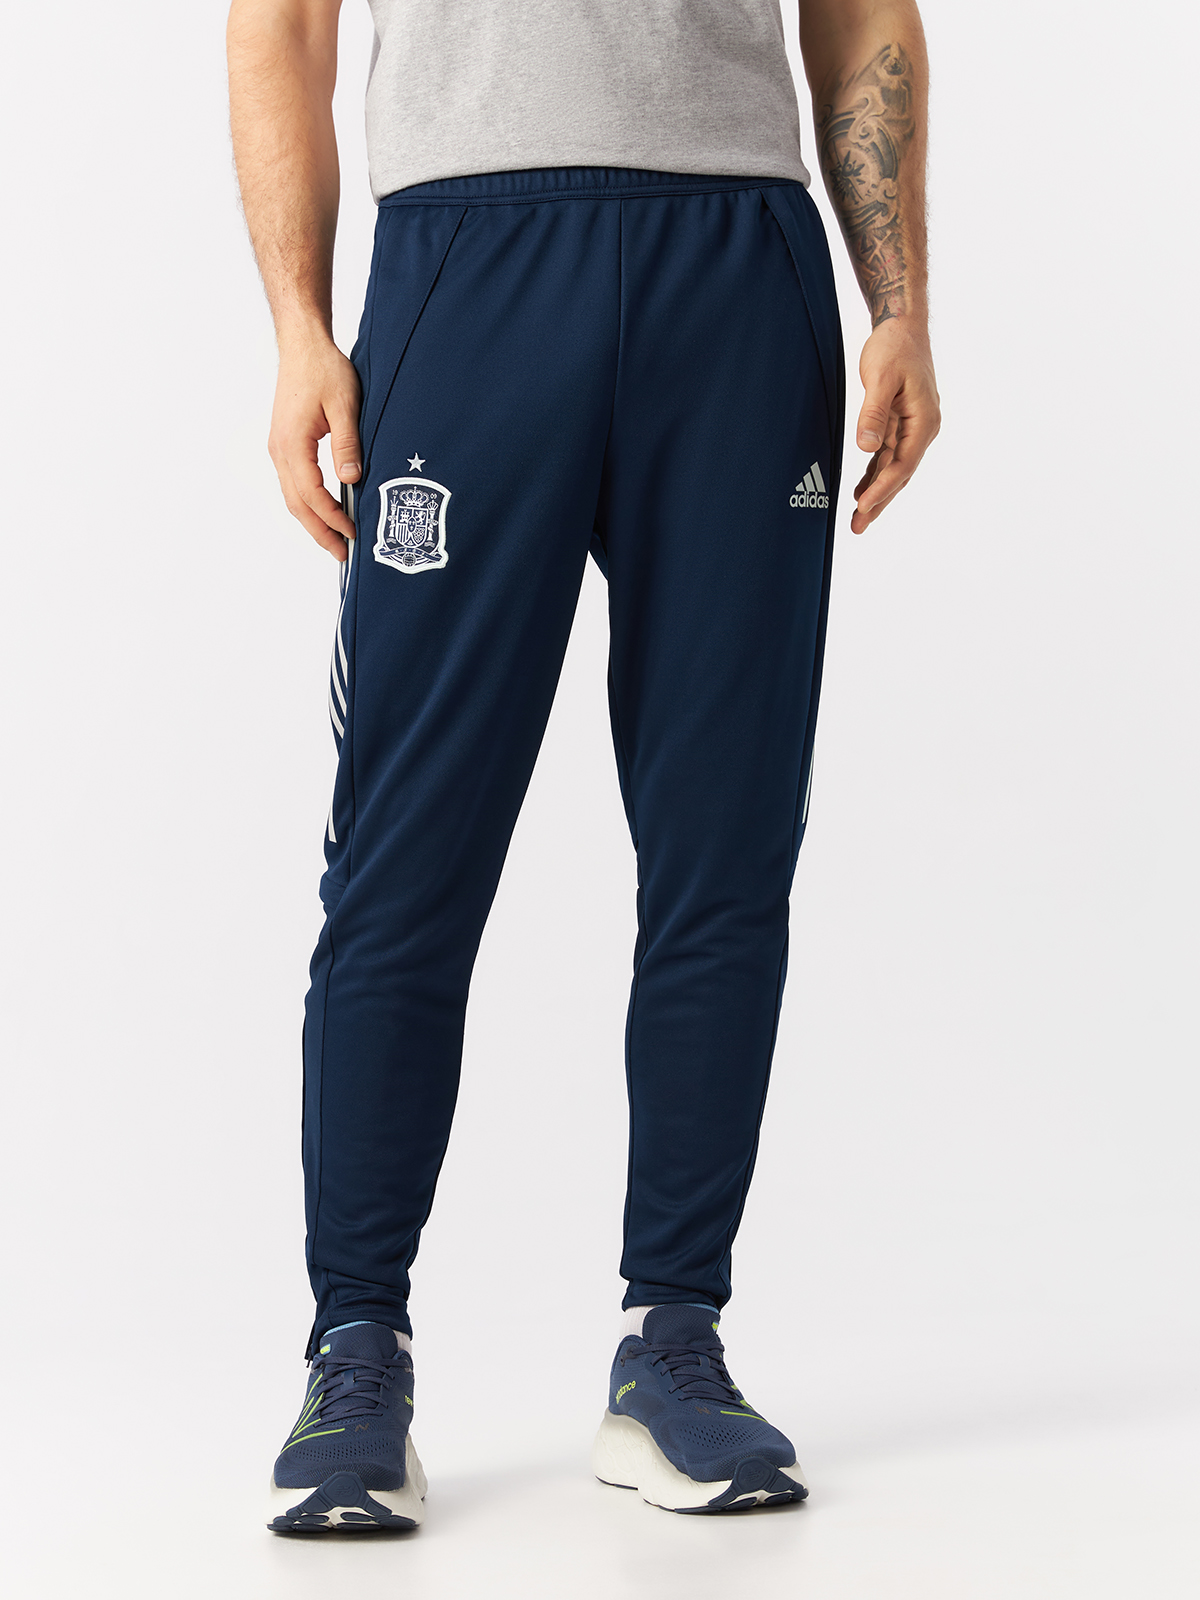 Спортивные брюки мужские Adidas FI6286 синие M